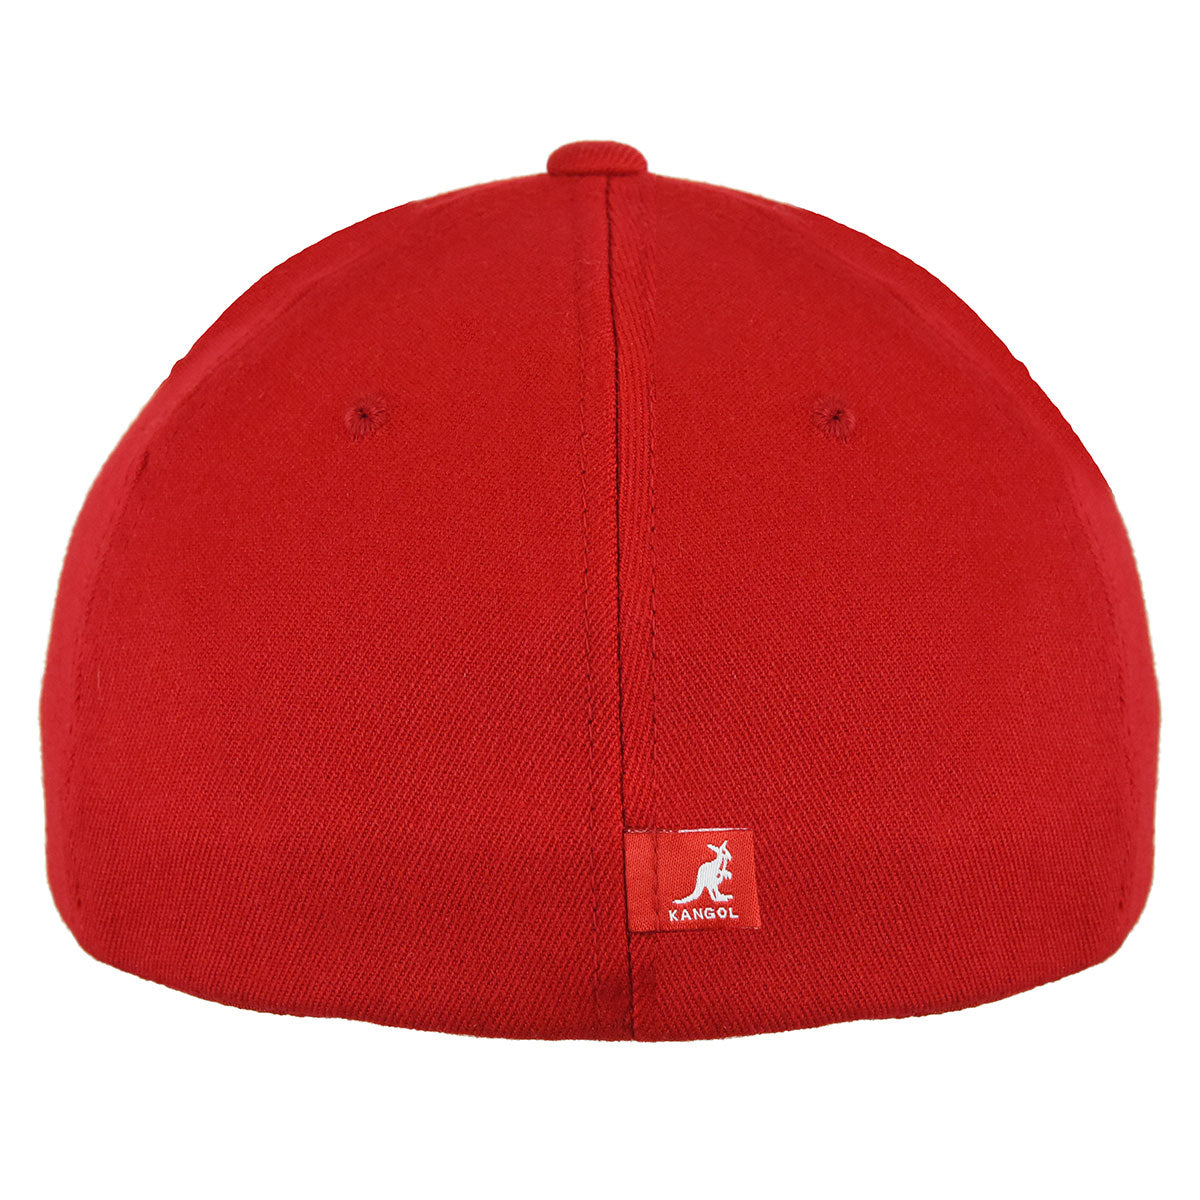 Kangol Wool Flexfit Legum Stark – Red and Baseball Cap